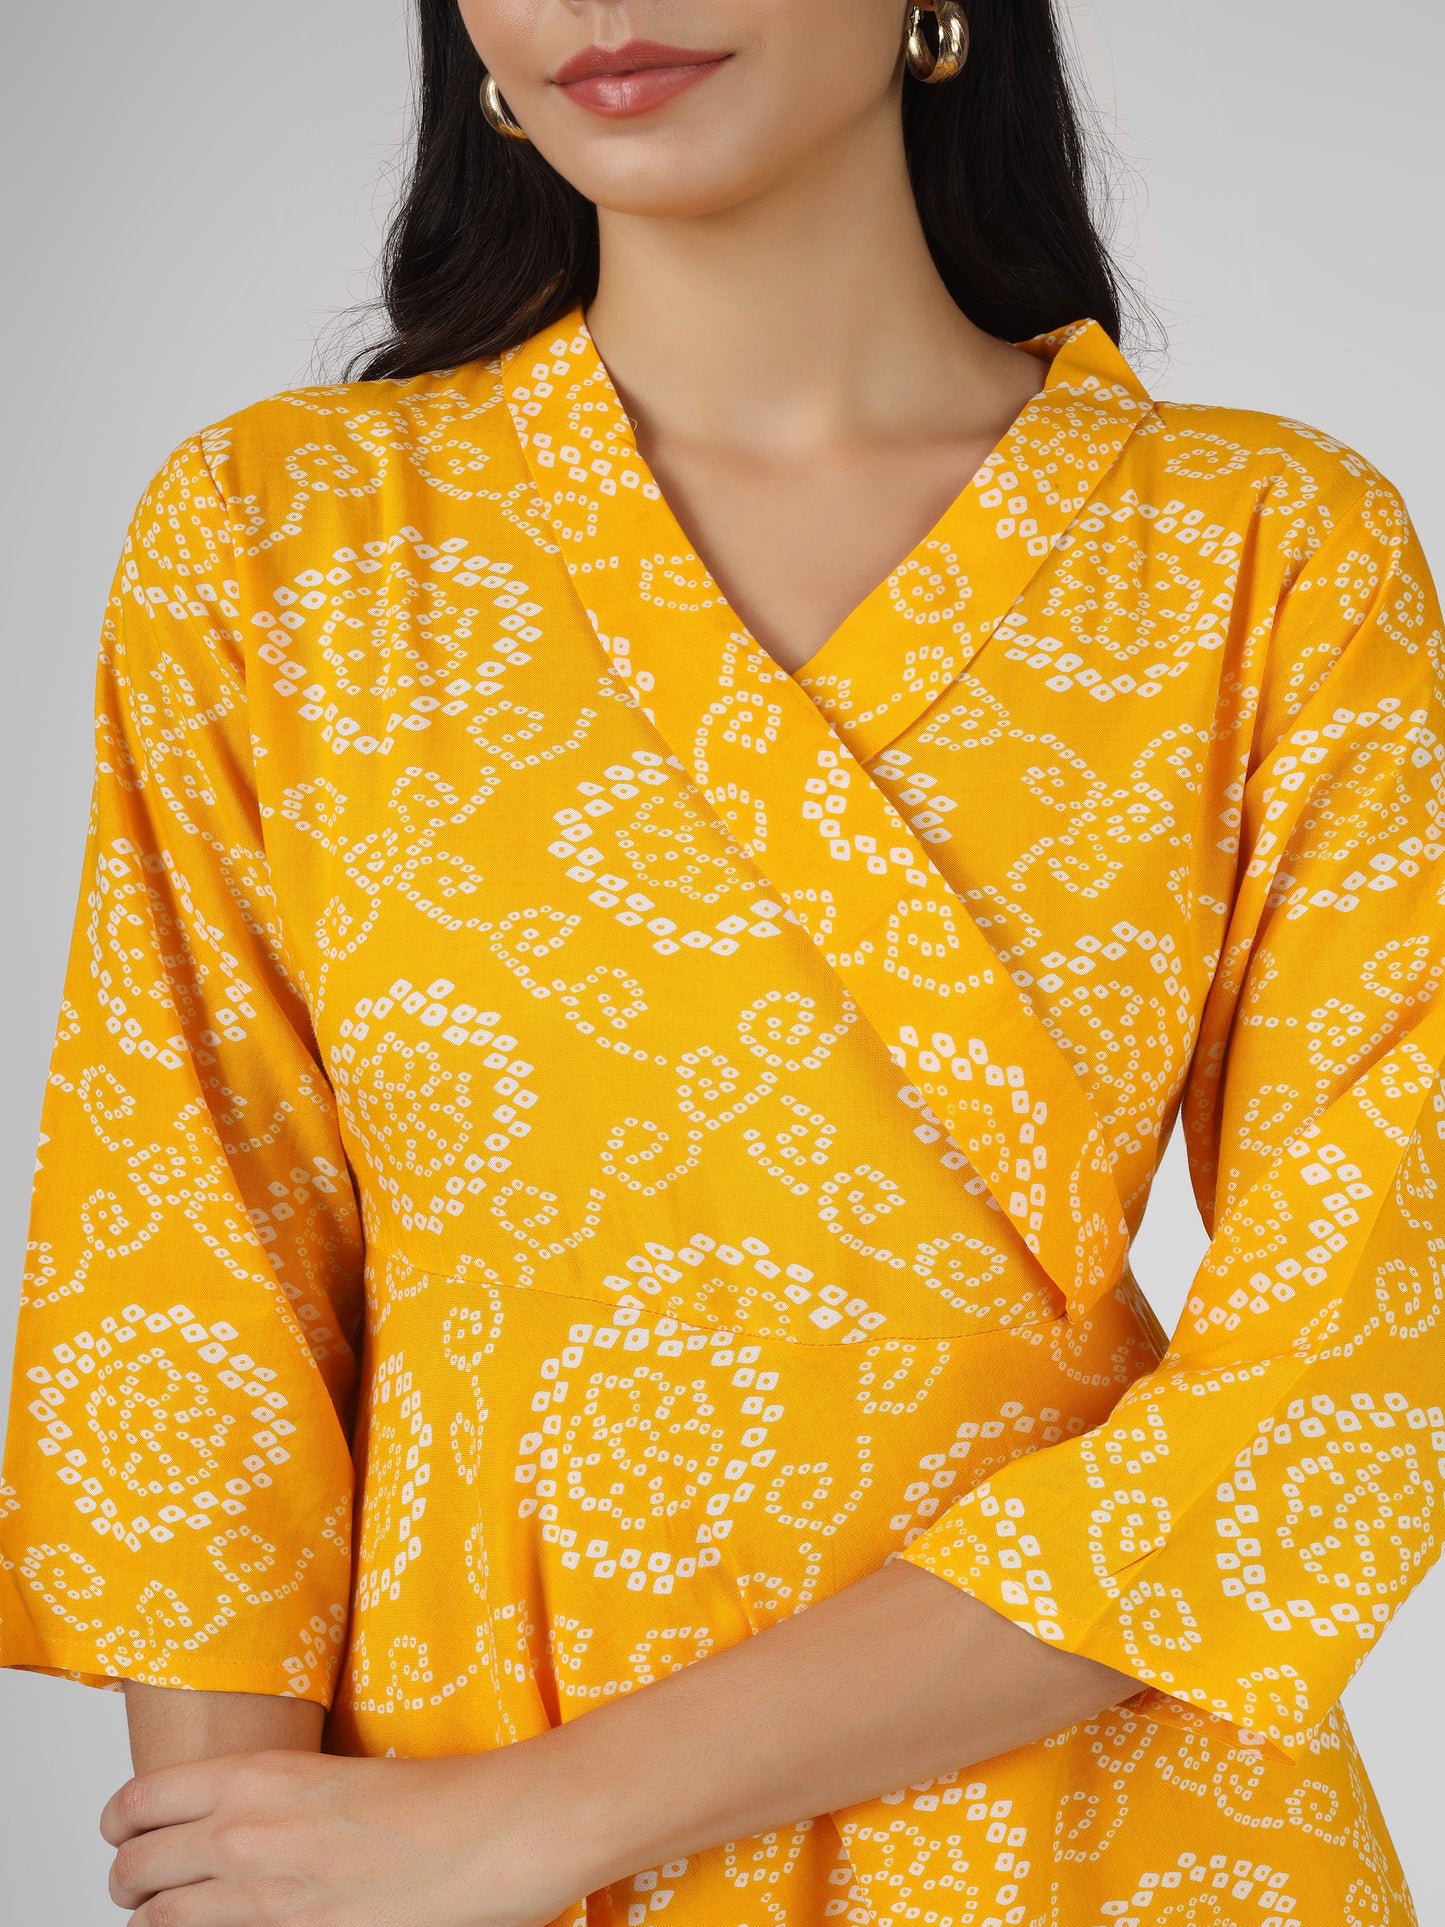 Bandhani Printed Yellow Angrakha Top and Pant Cord Set